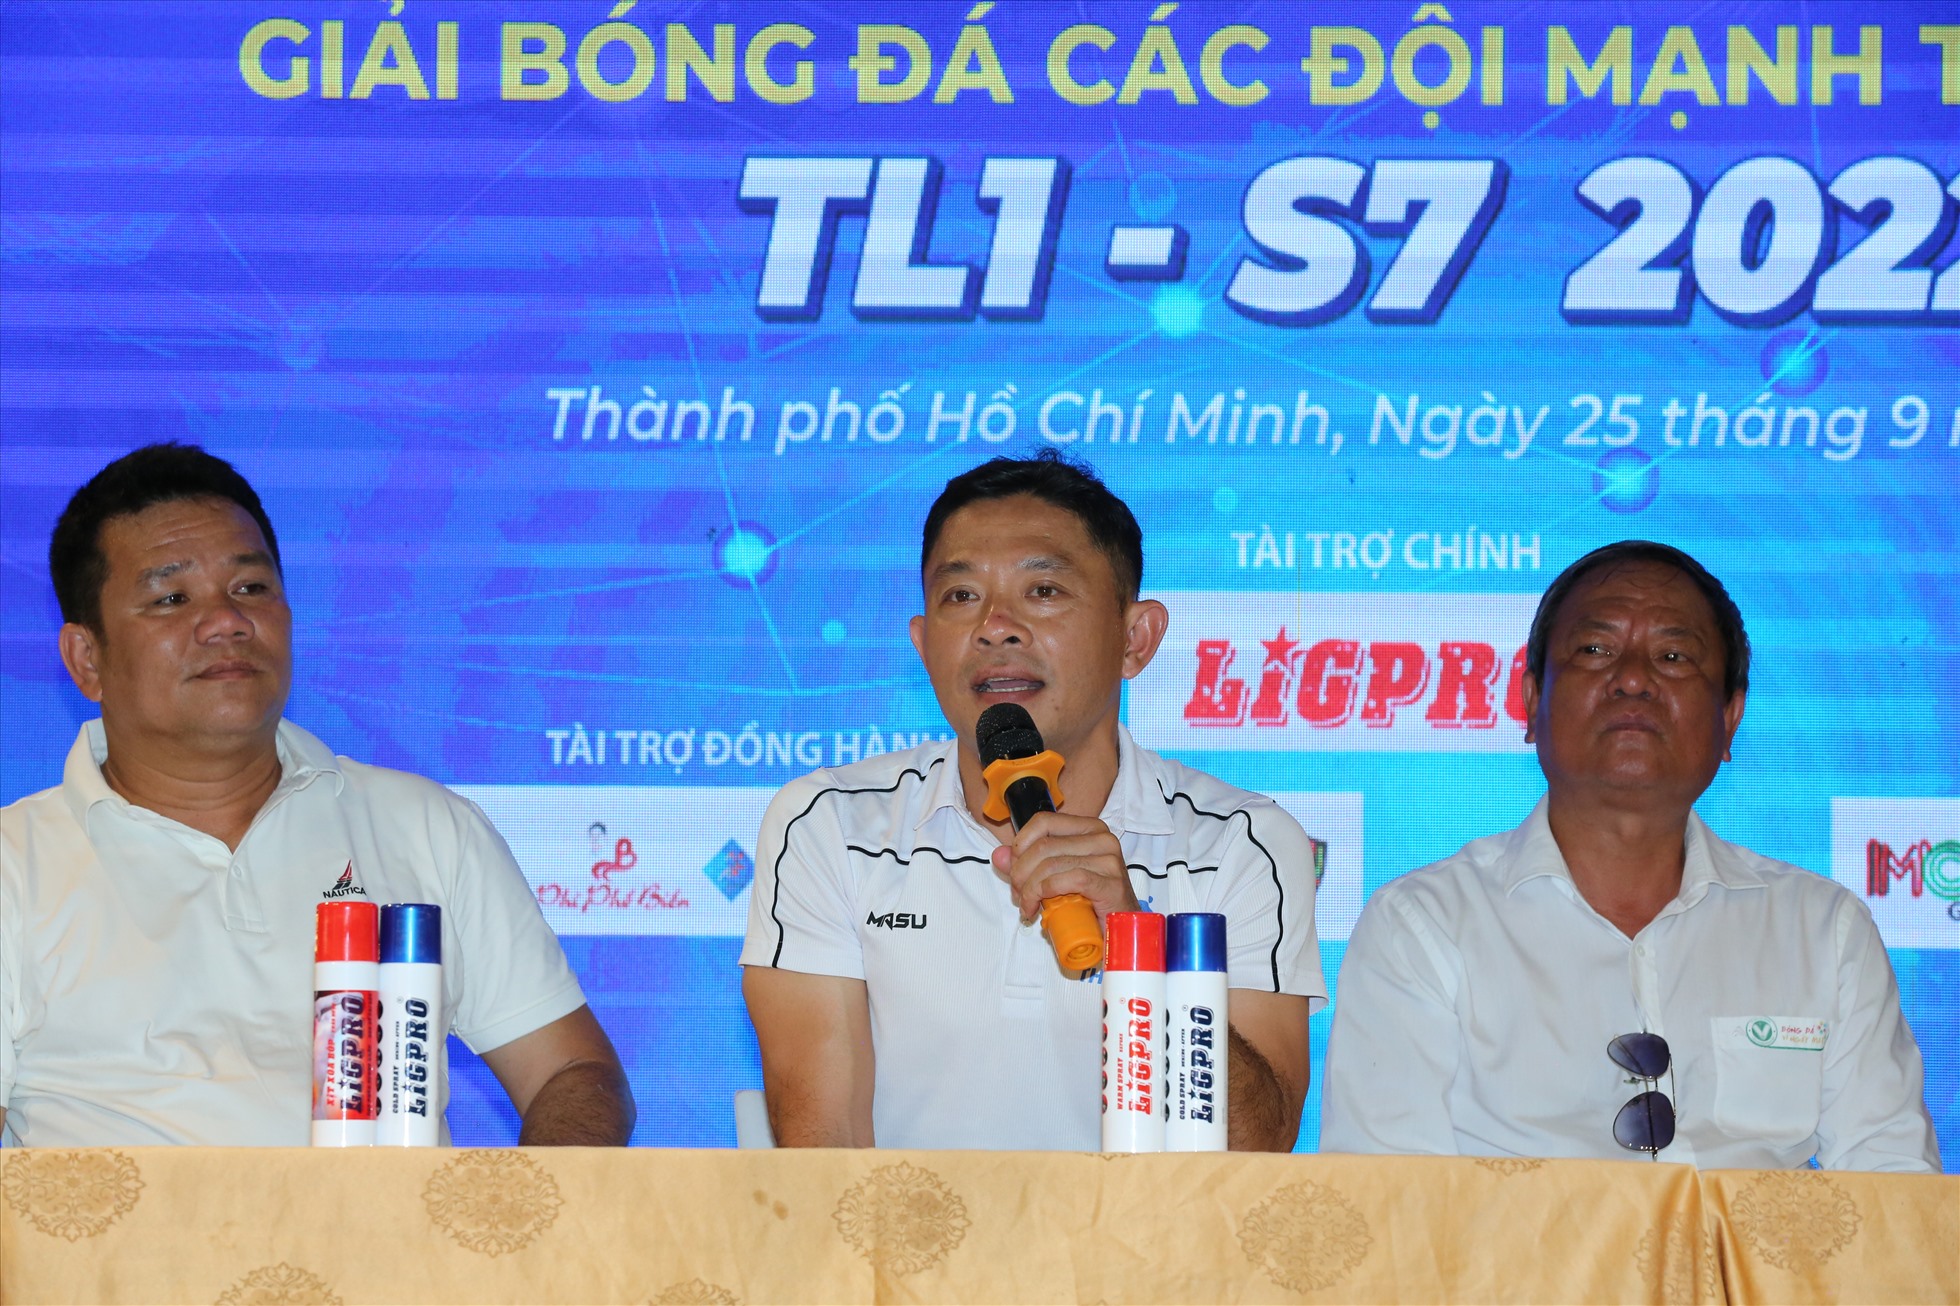 Giải Thiên Long TL1-S7 2022 hứa hẹn hấp dẫn với sự tham gia của các đội mạnh. Ảnh: TL